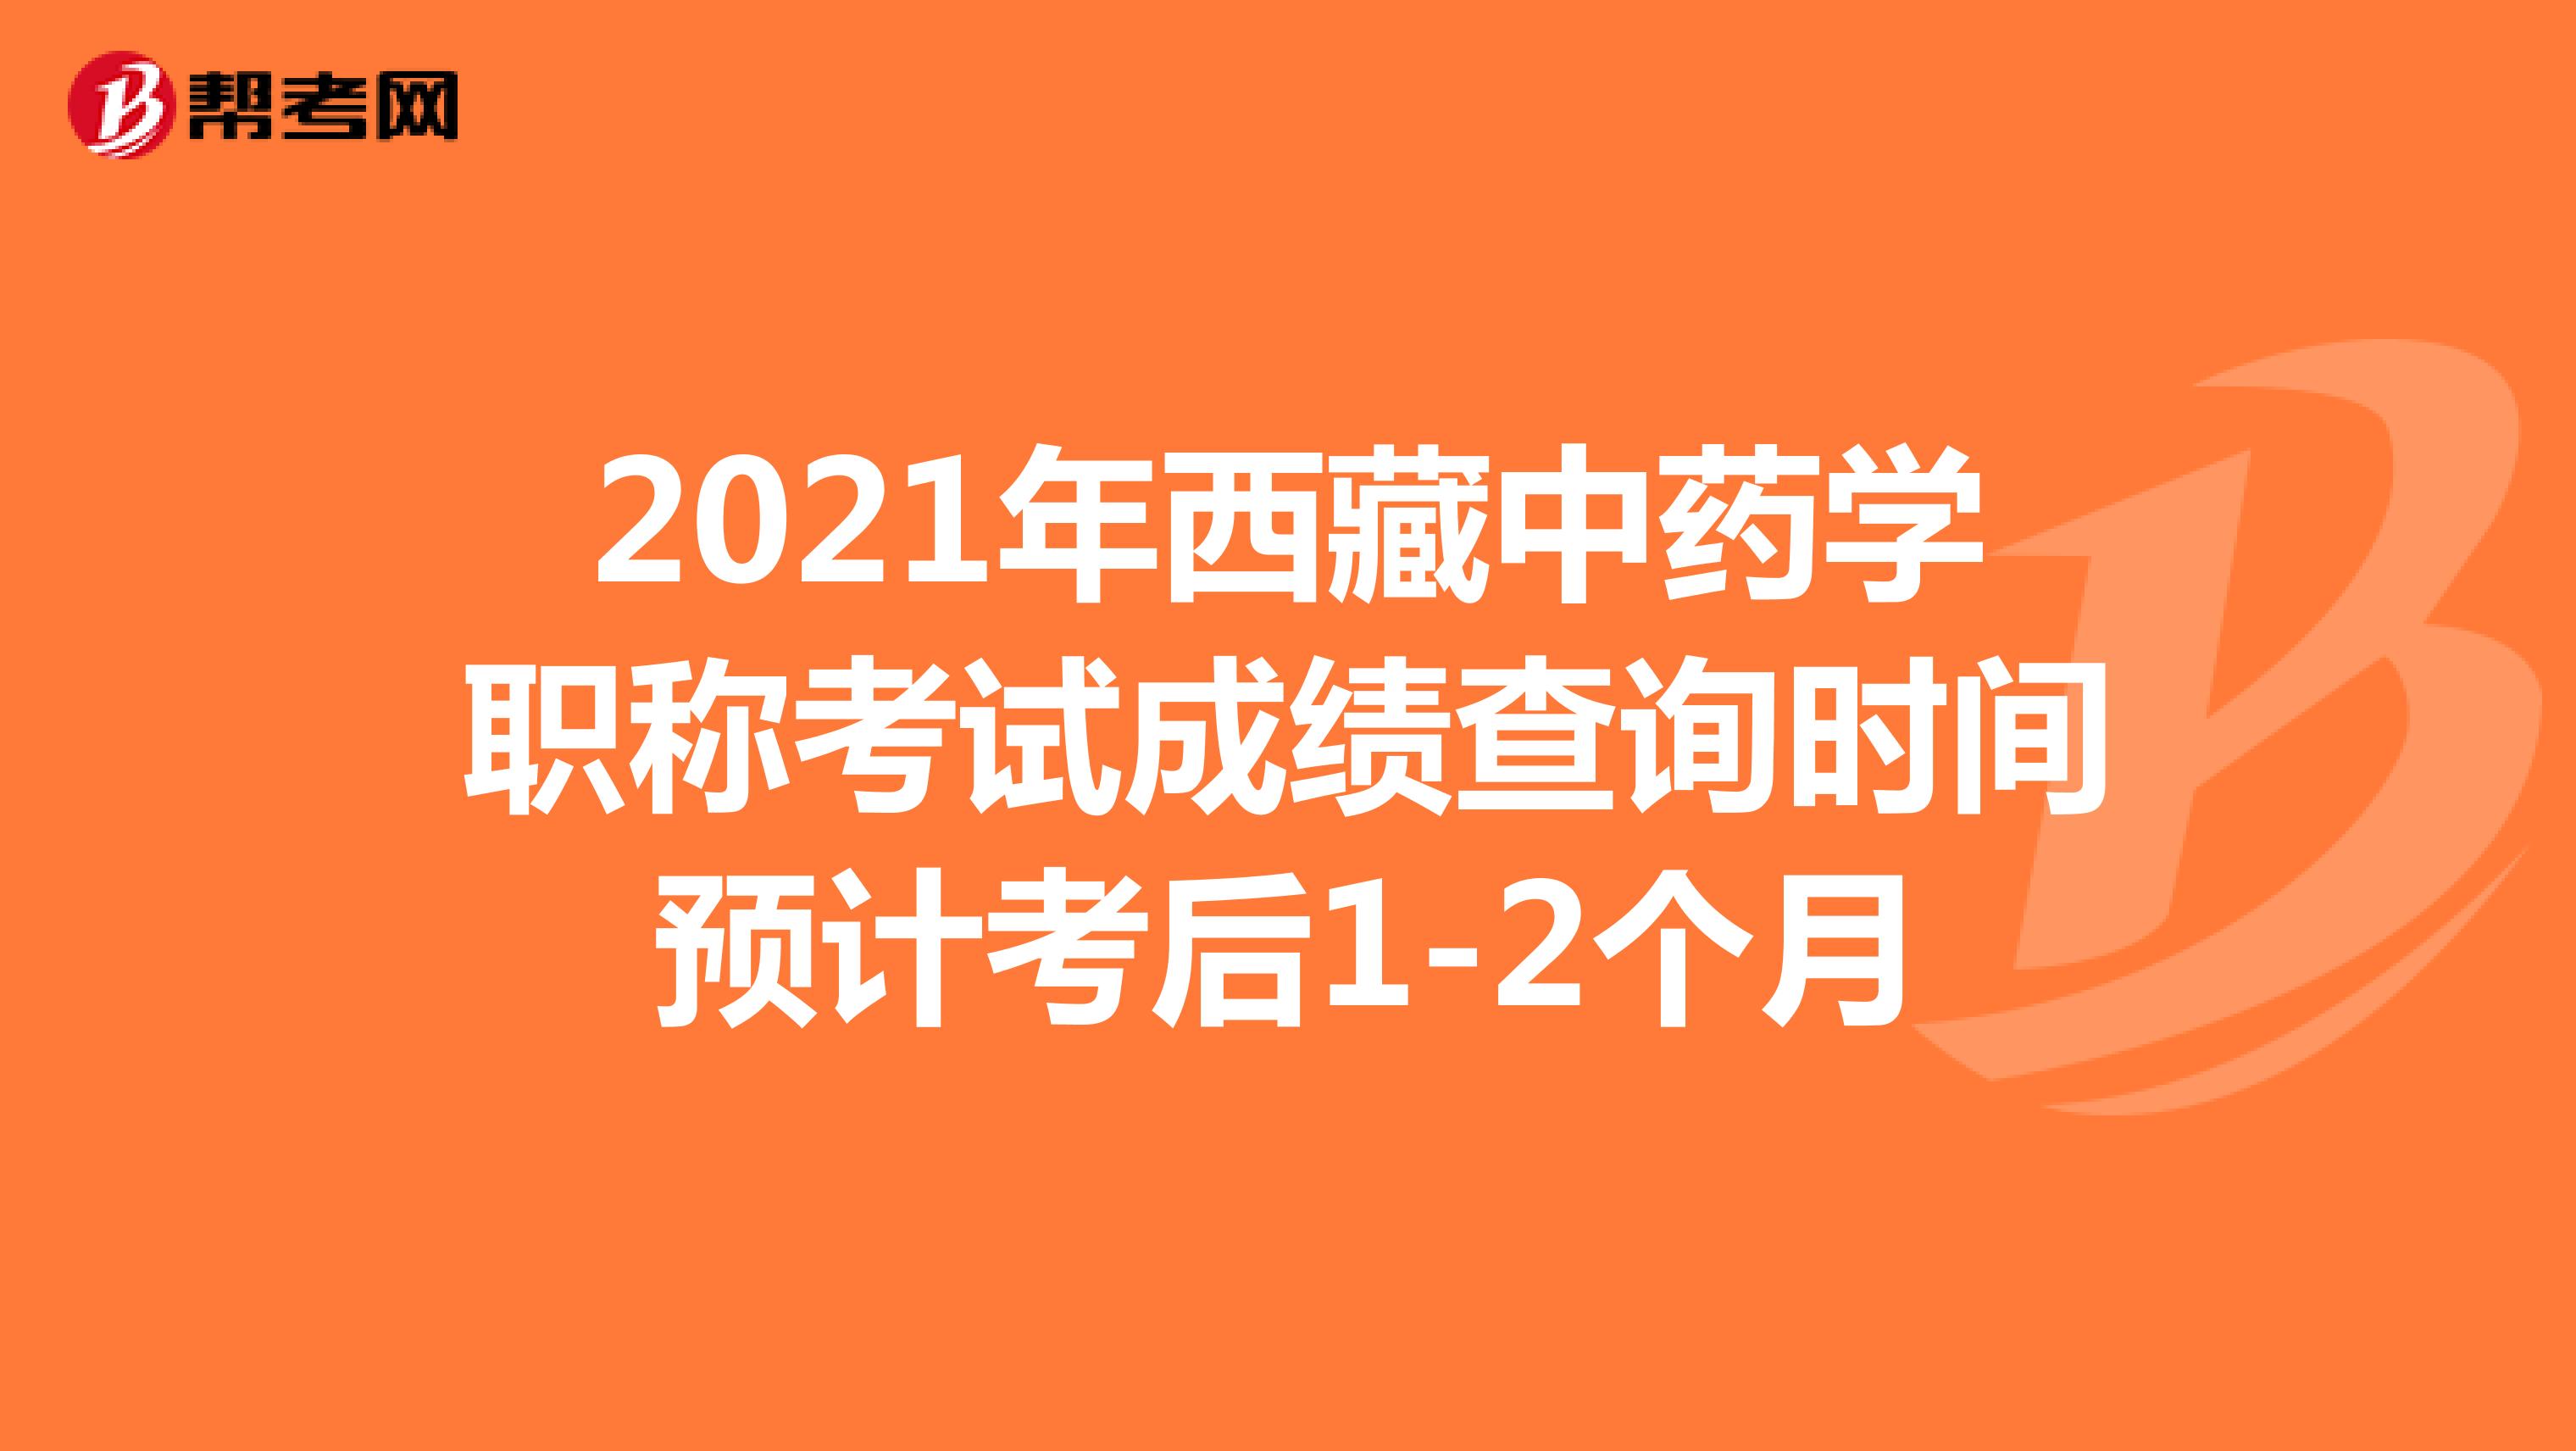 2021年西藏中药学职称考试成绩查询时间预计考后1-2个月